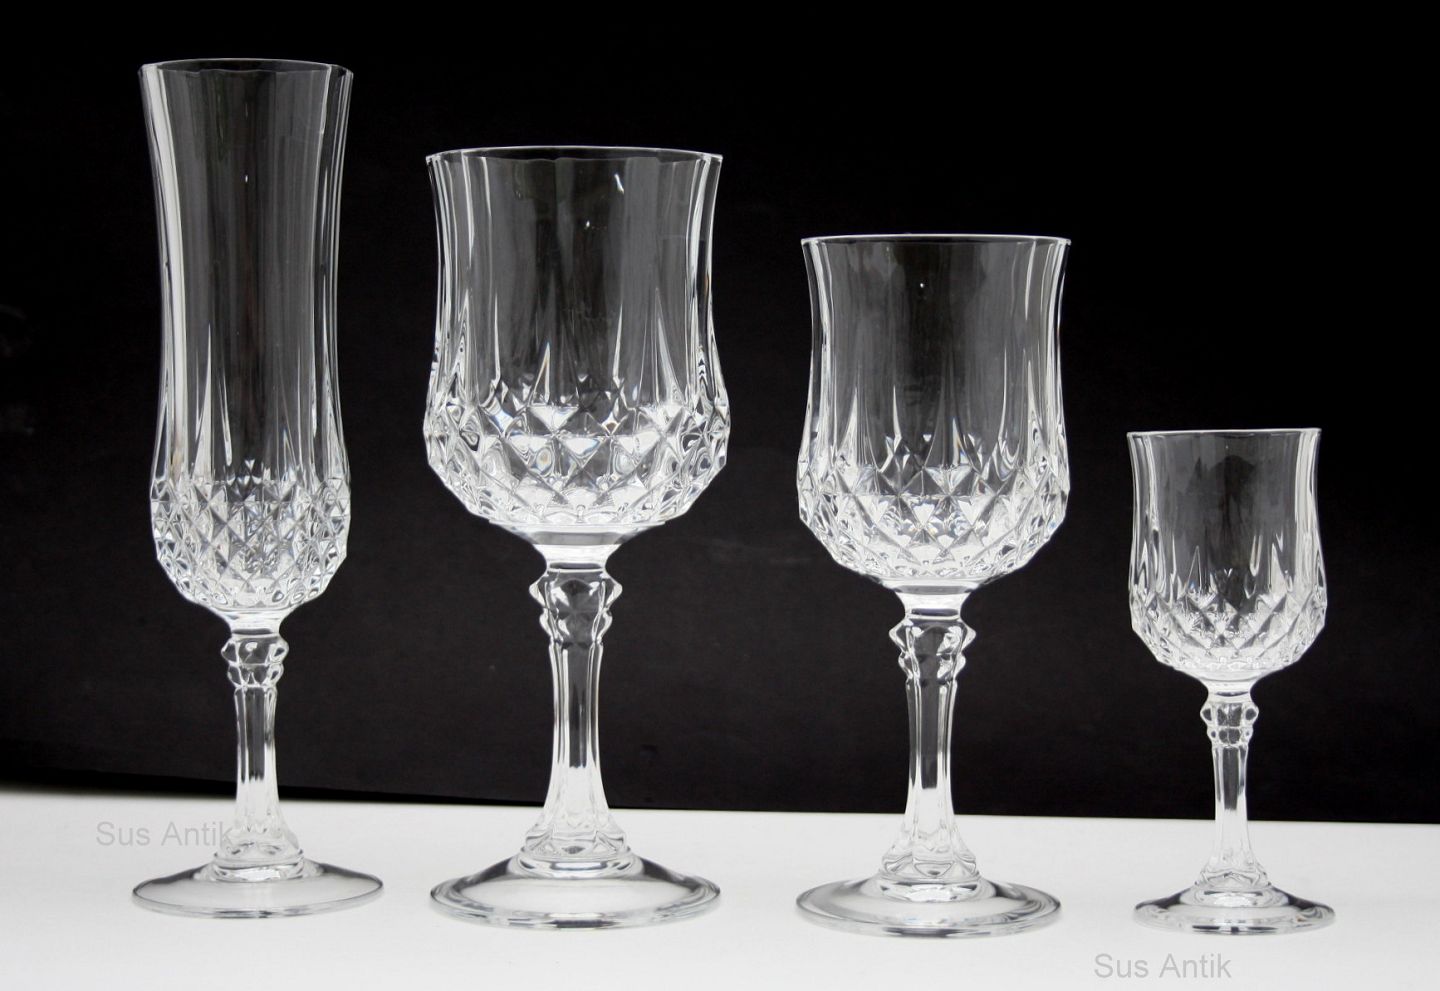 Shetland Mob pensionist KAD ringen - Longchamp krystalglas, Cristal D'Arques - Longchamp  krystalglas, Cristal D'Arques